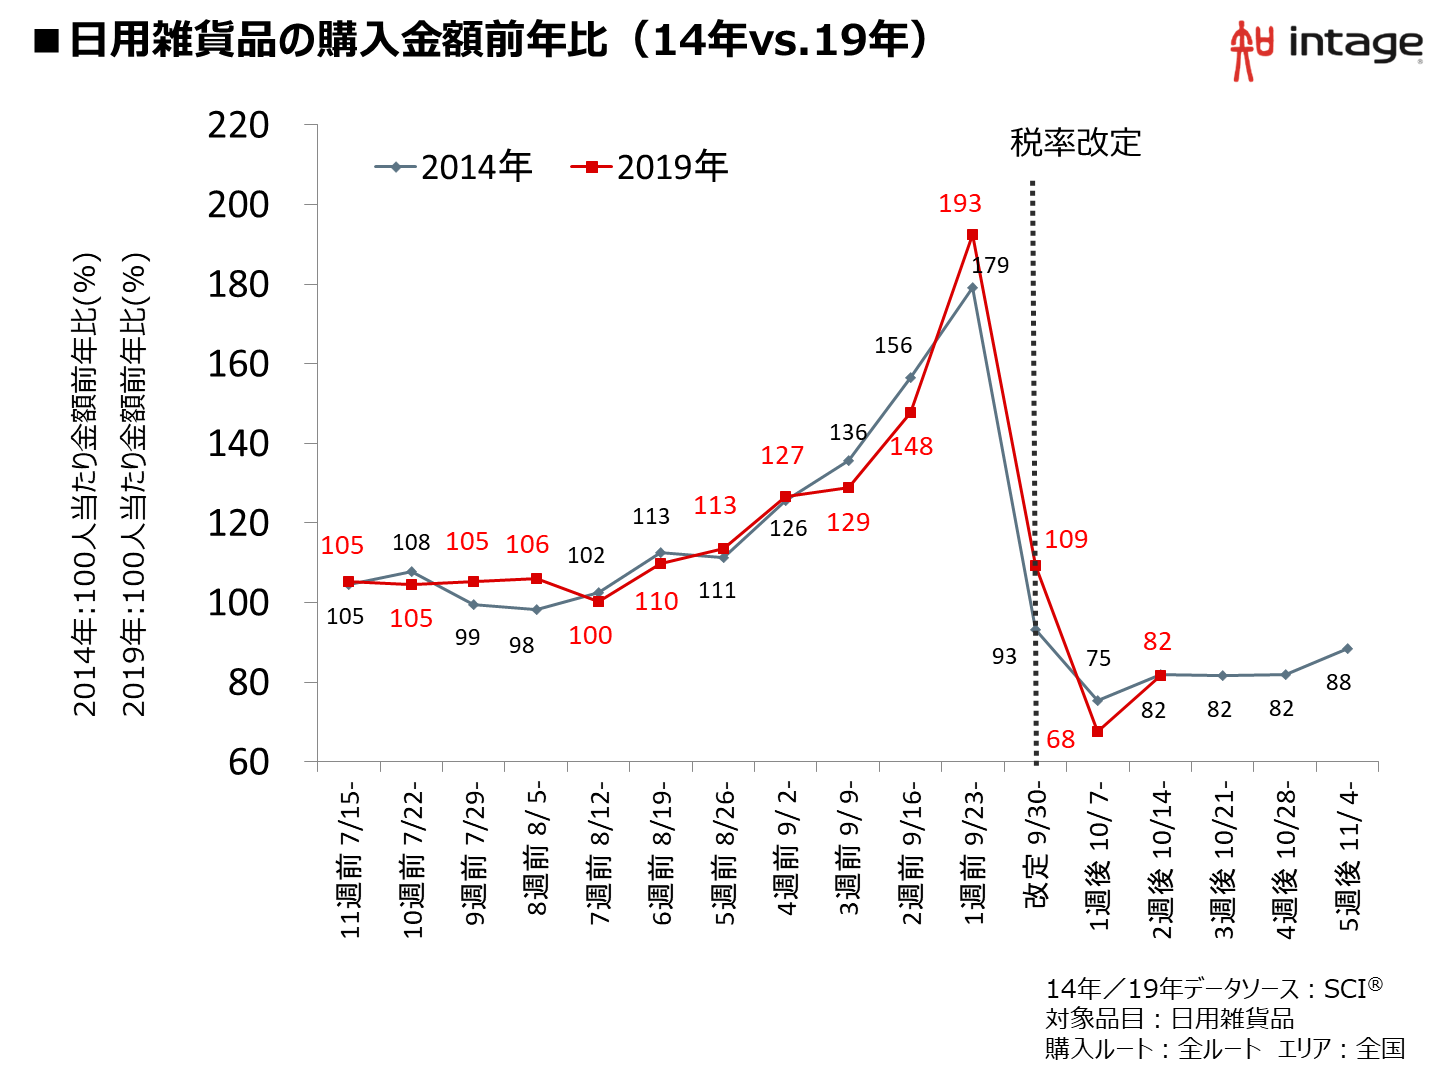 日用雑貨品の購入金額前年比（14年vs.19年）